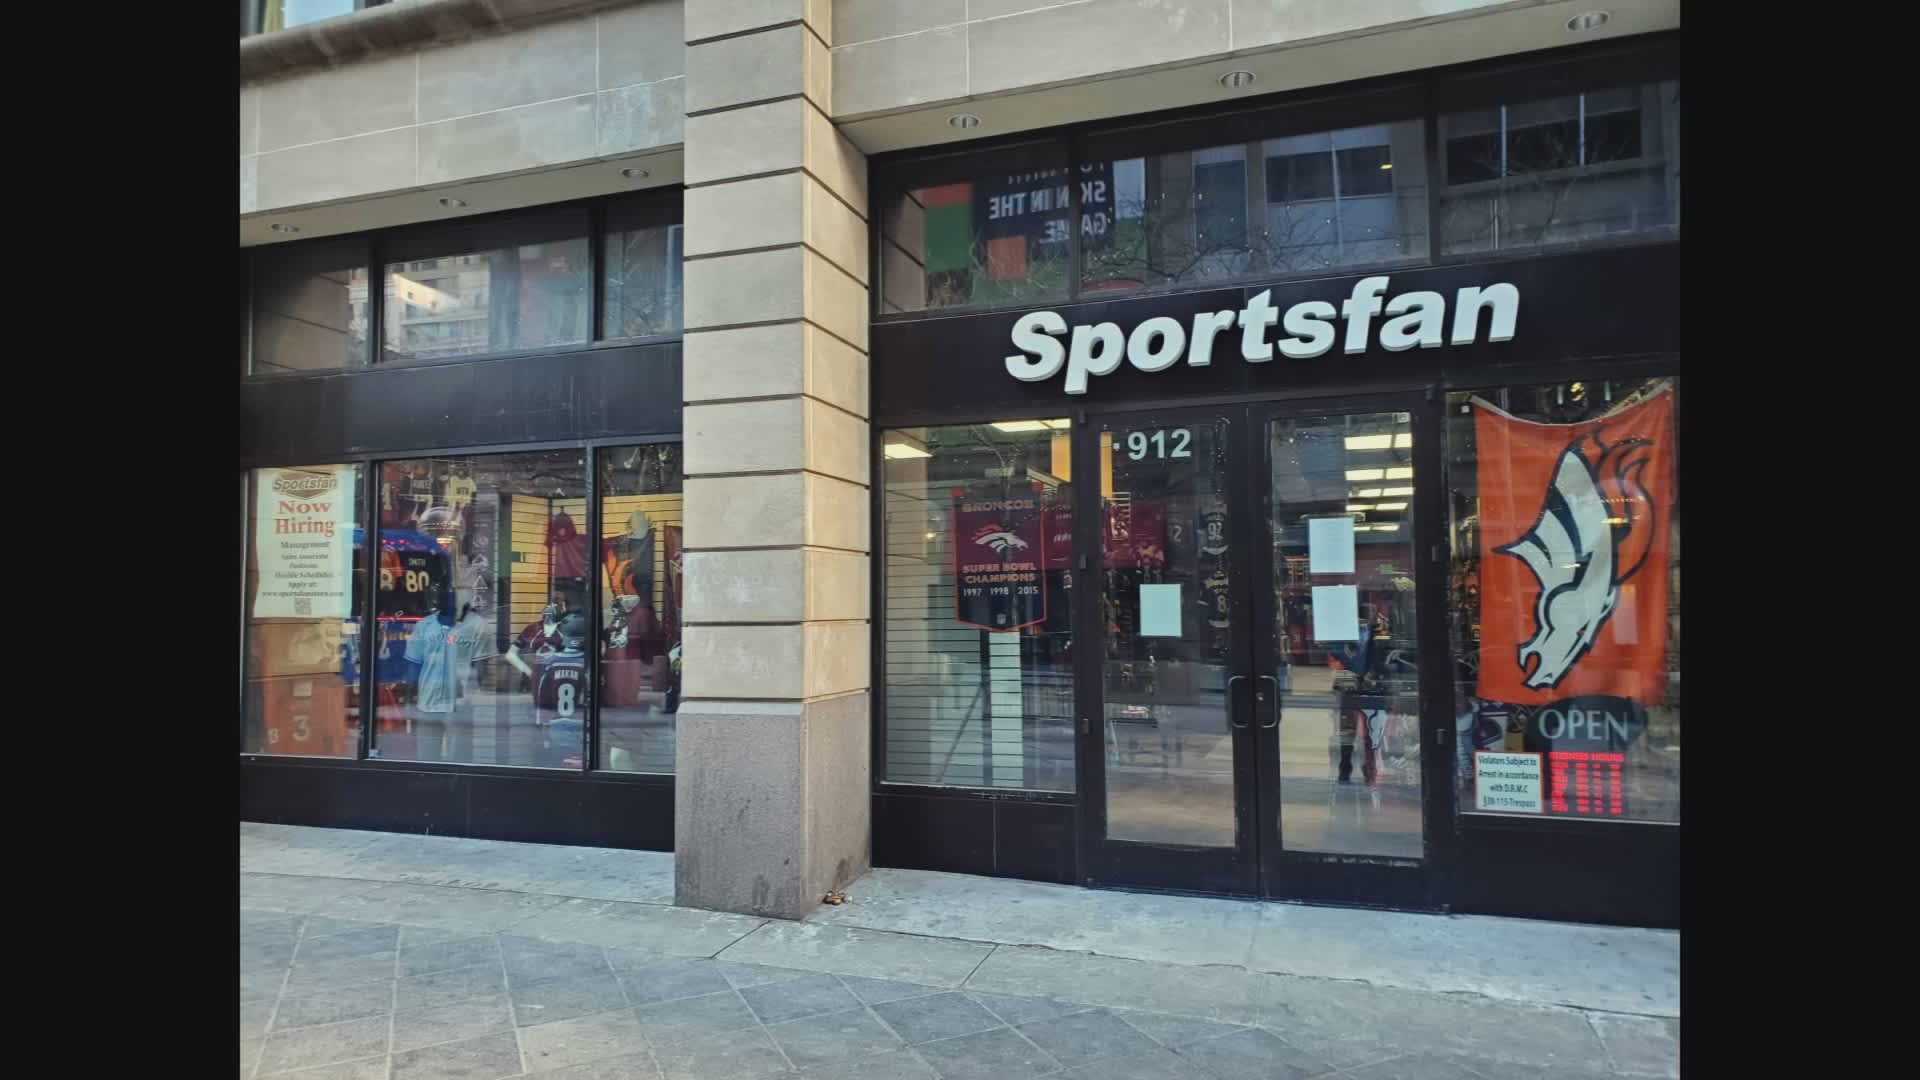 Exterior of Sportsfan store in Denver, Colorado